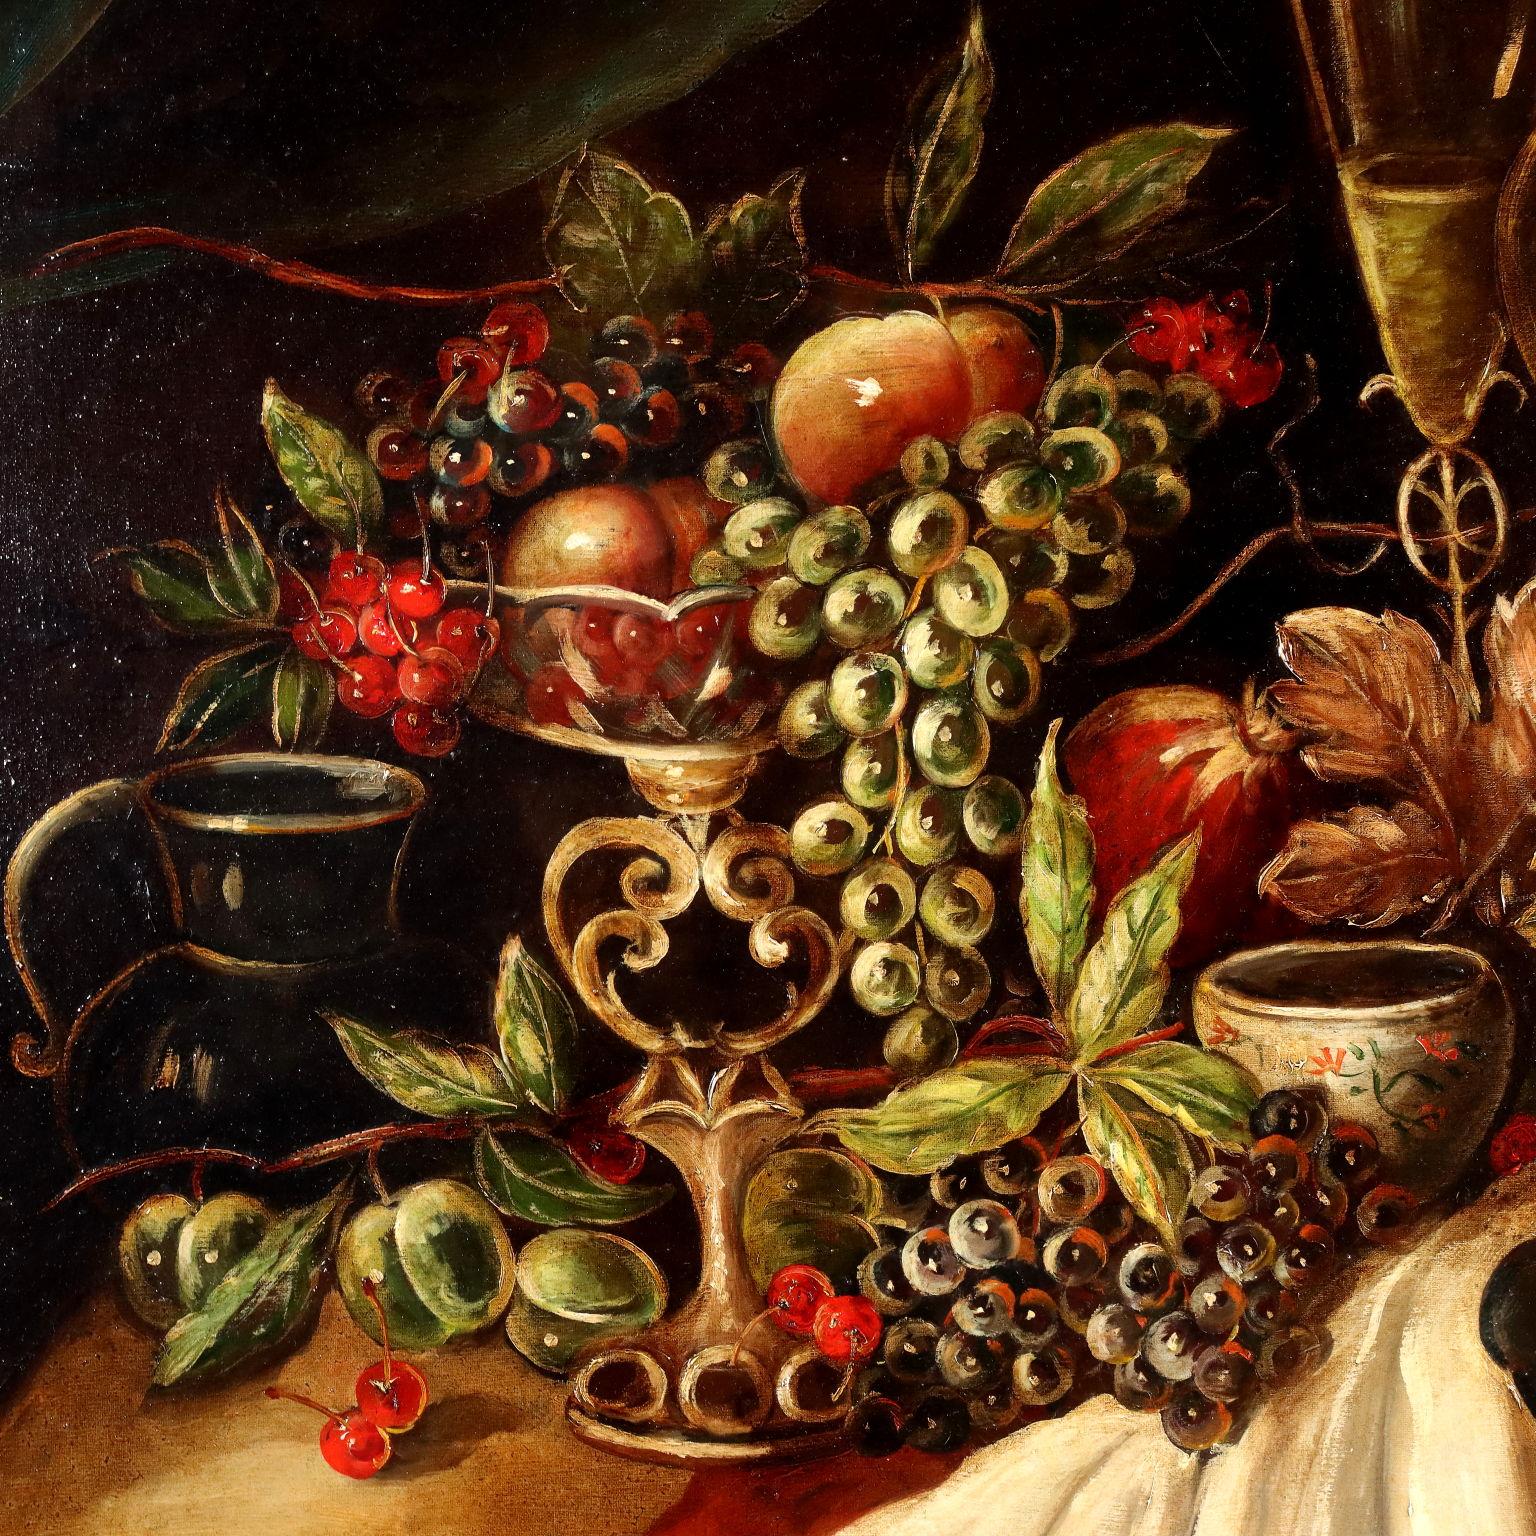 Olio su tela.
La composizione guarda alle produzioni del XVII secolo e propone una tavola riccamente imbandita di vassoi di frutta, cesti di ciliege, canestri con pesche e grappoli d'uva con pampini decorativi, terrine con semi, e calici, sormontati